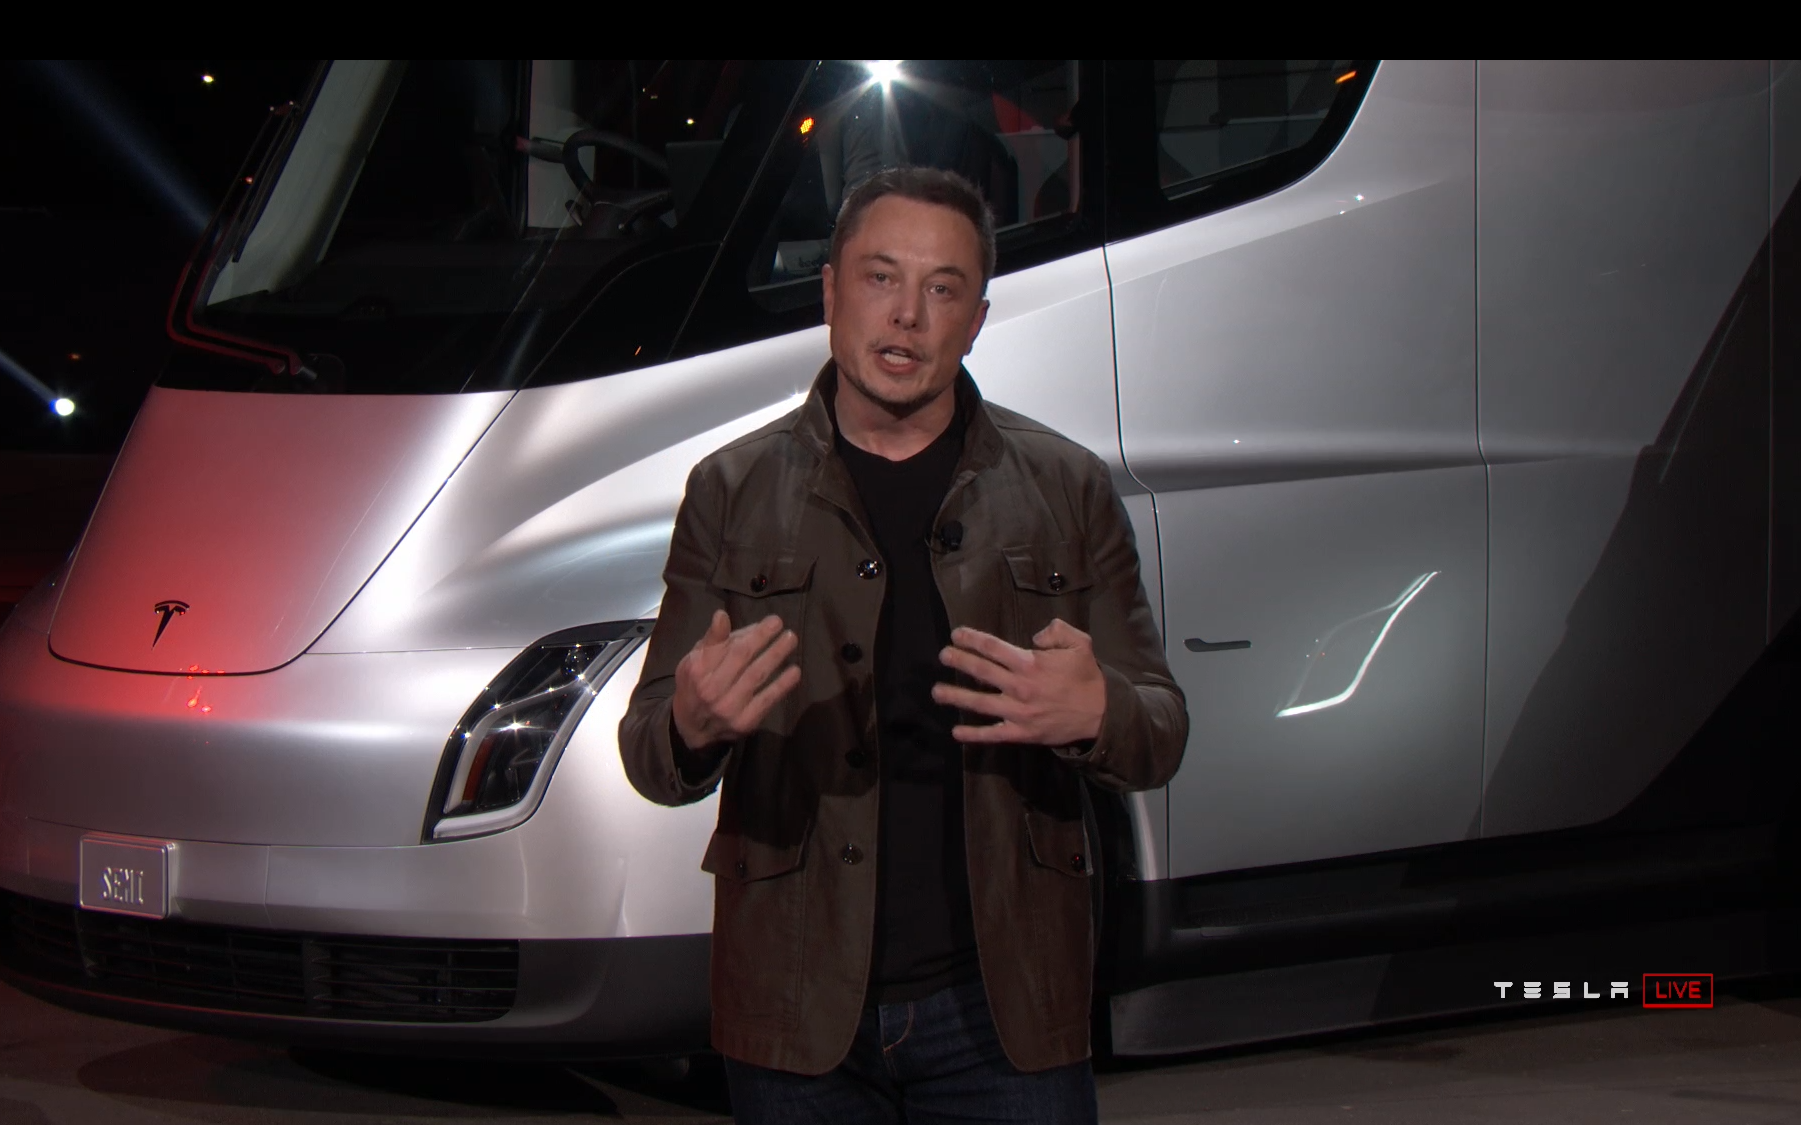 [AKTUALISIERT] danach hat ilon Musk präsentiert die fantastische neue электрофуру Tesla Halb